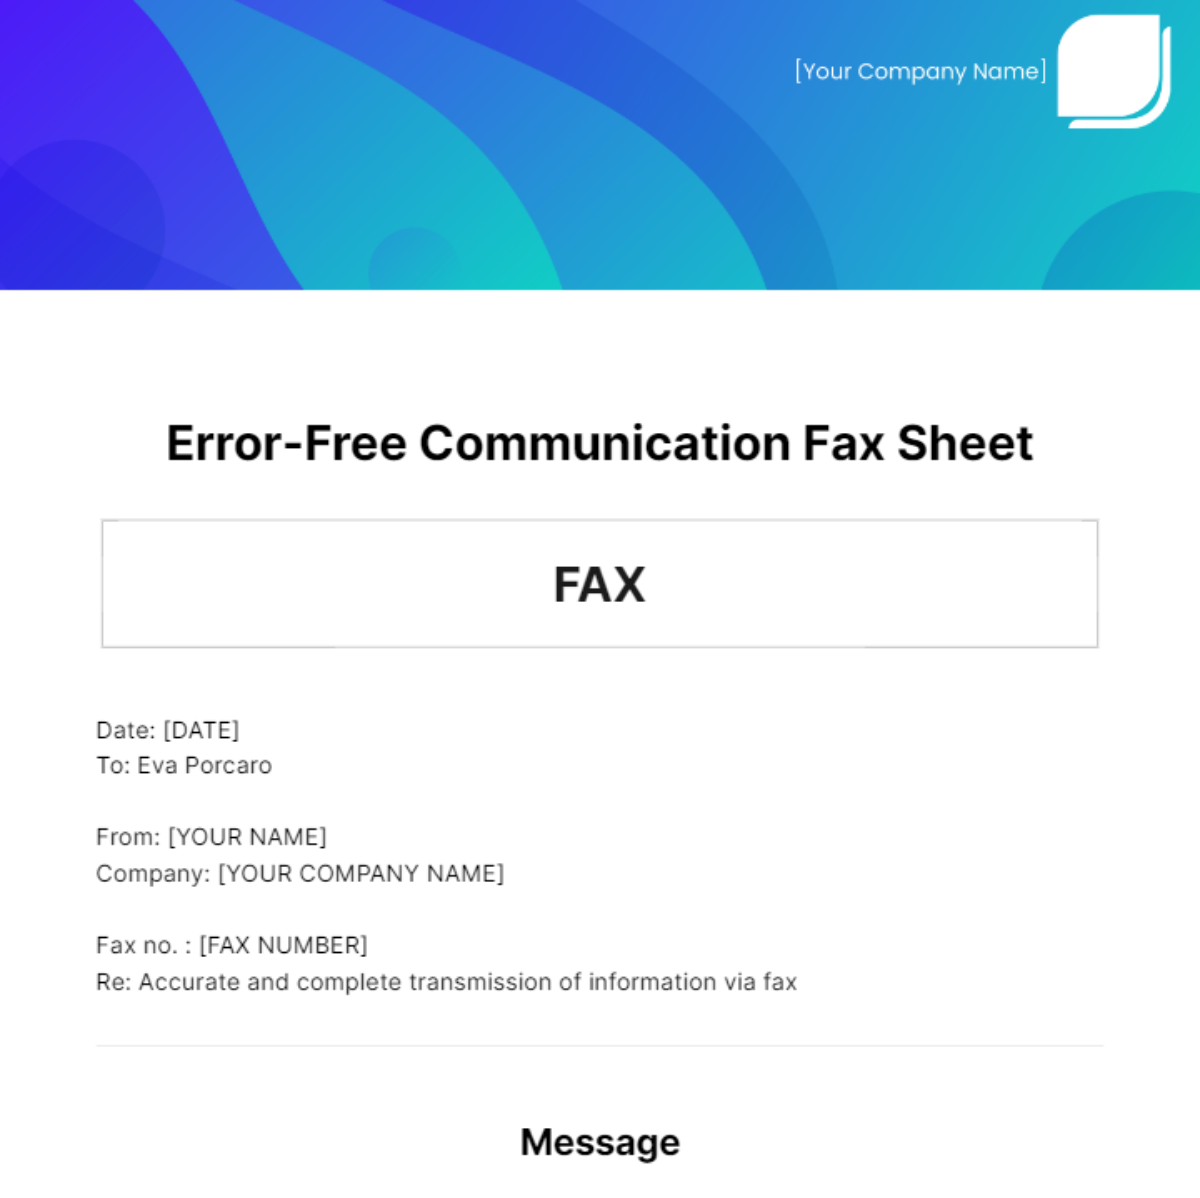 Error-Free Communication Fax Sheet Template